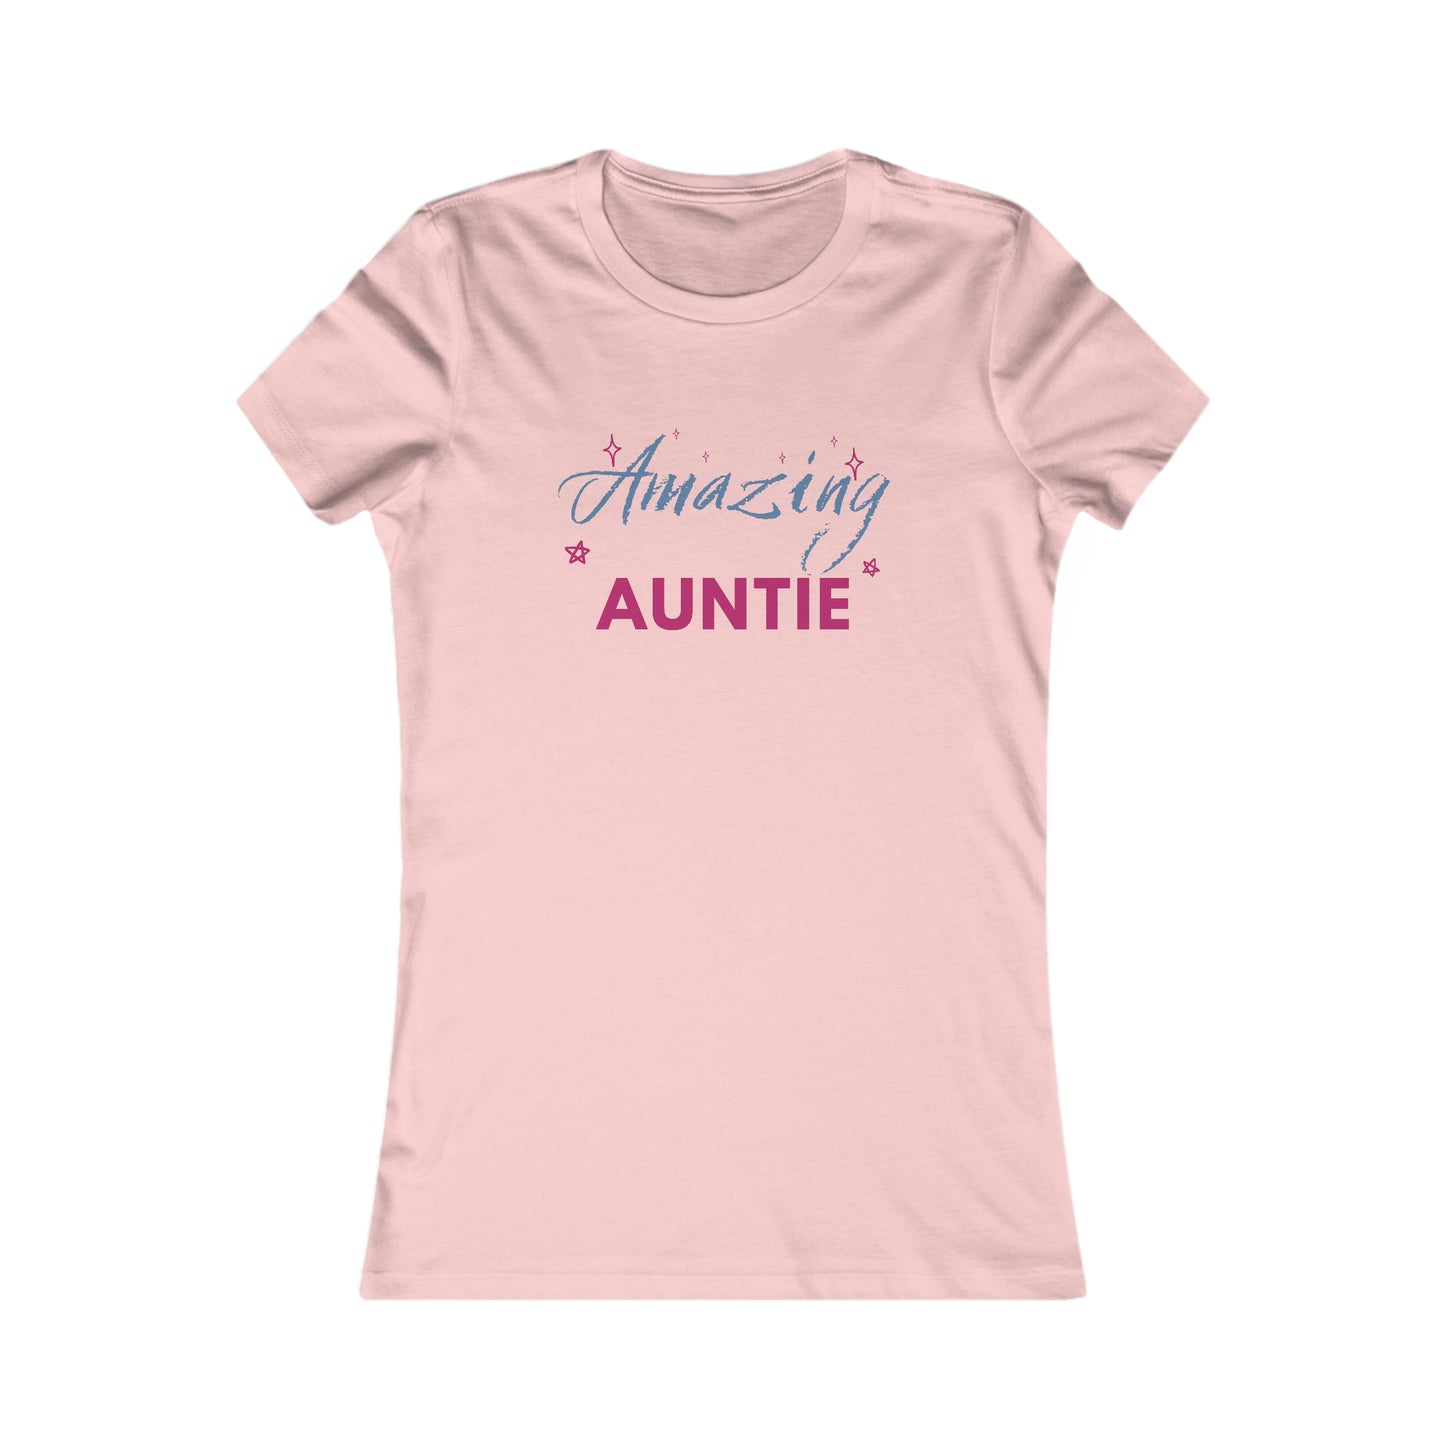 Amazing Auntie Shirt Women's Favorite Tee